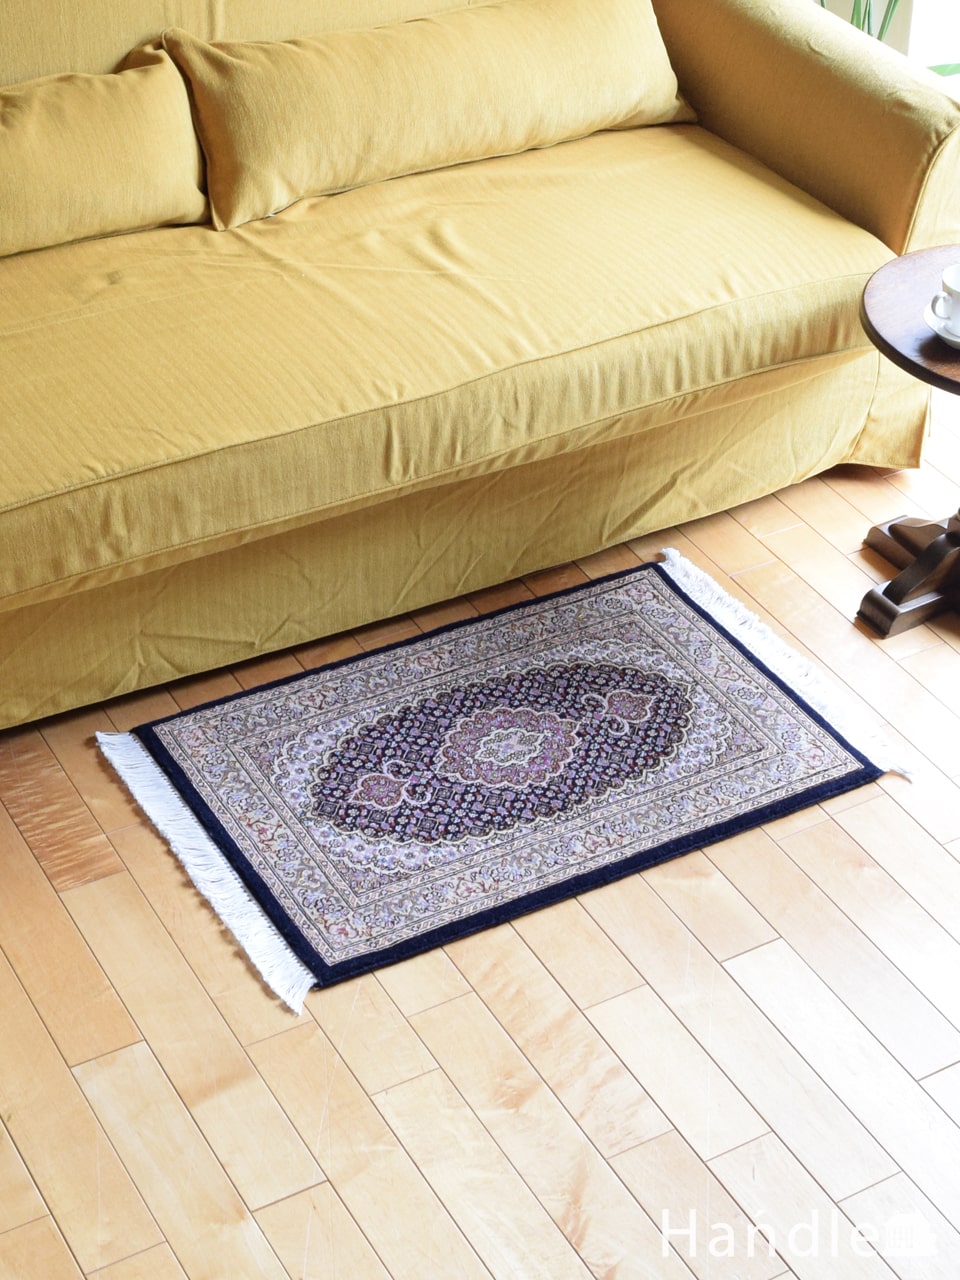 タブリーズ（Tabriz）の50Raj絨毯、おしゃれなマヒ柄のペルシャ絨毯(m 